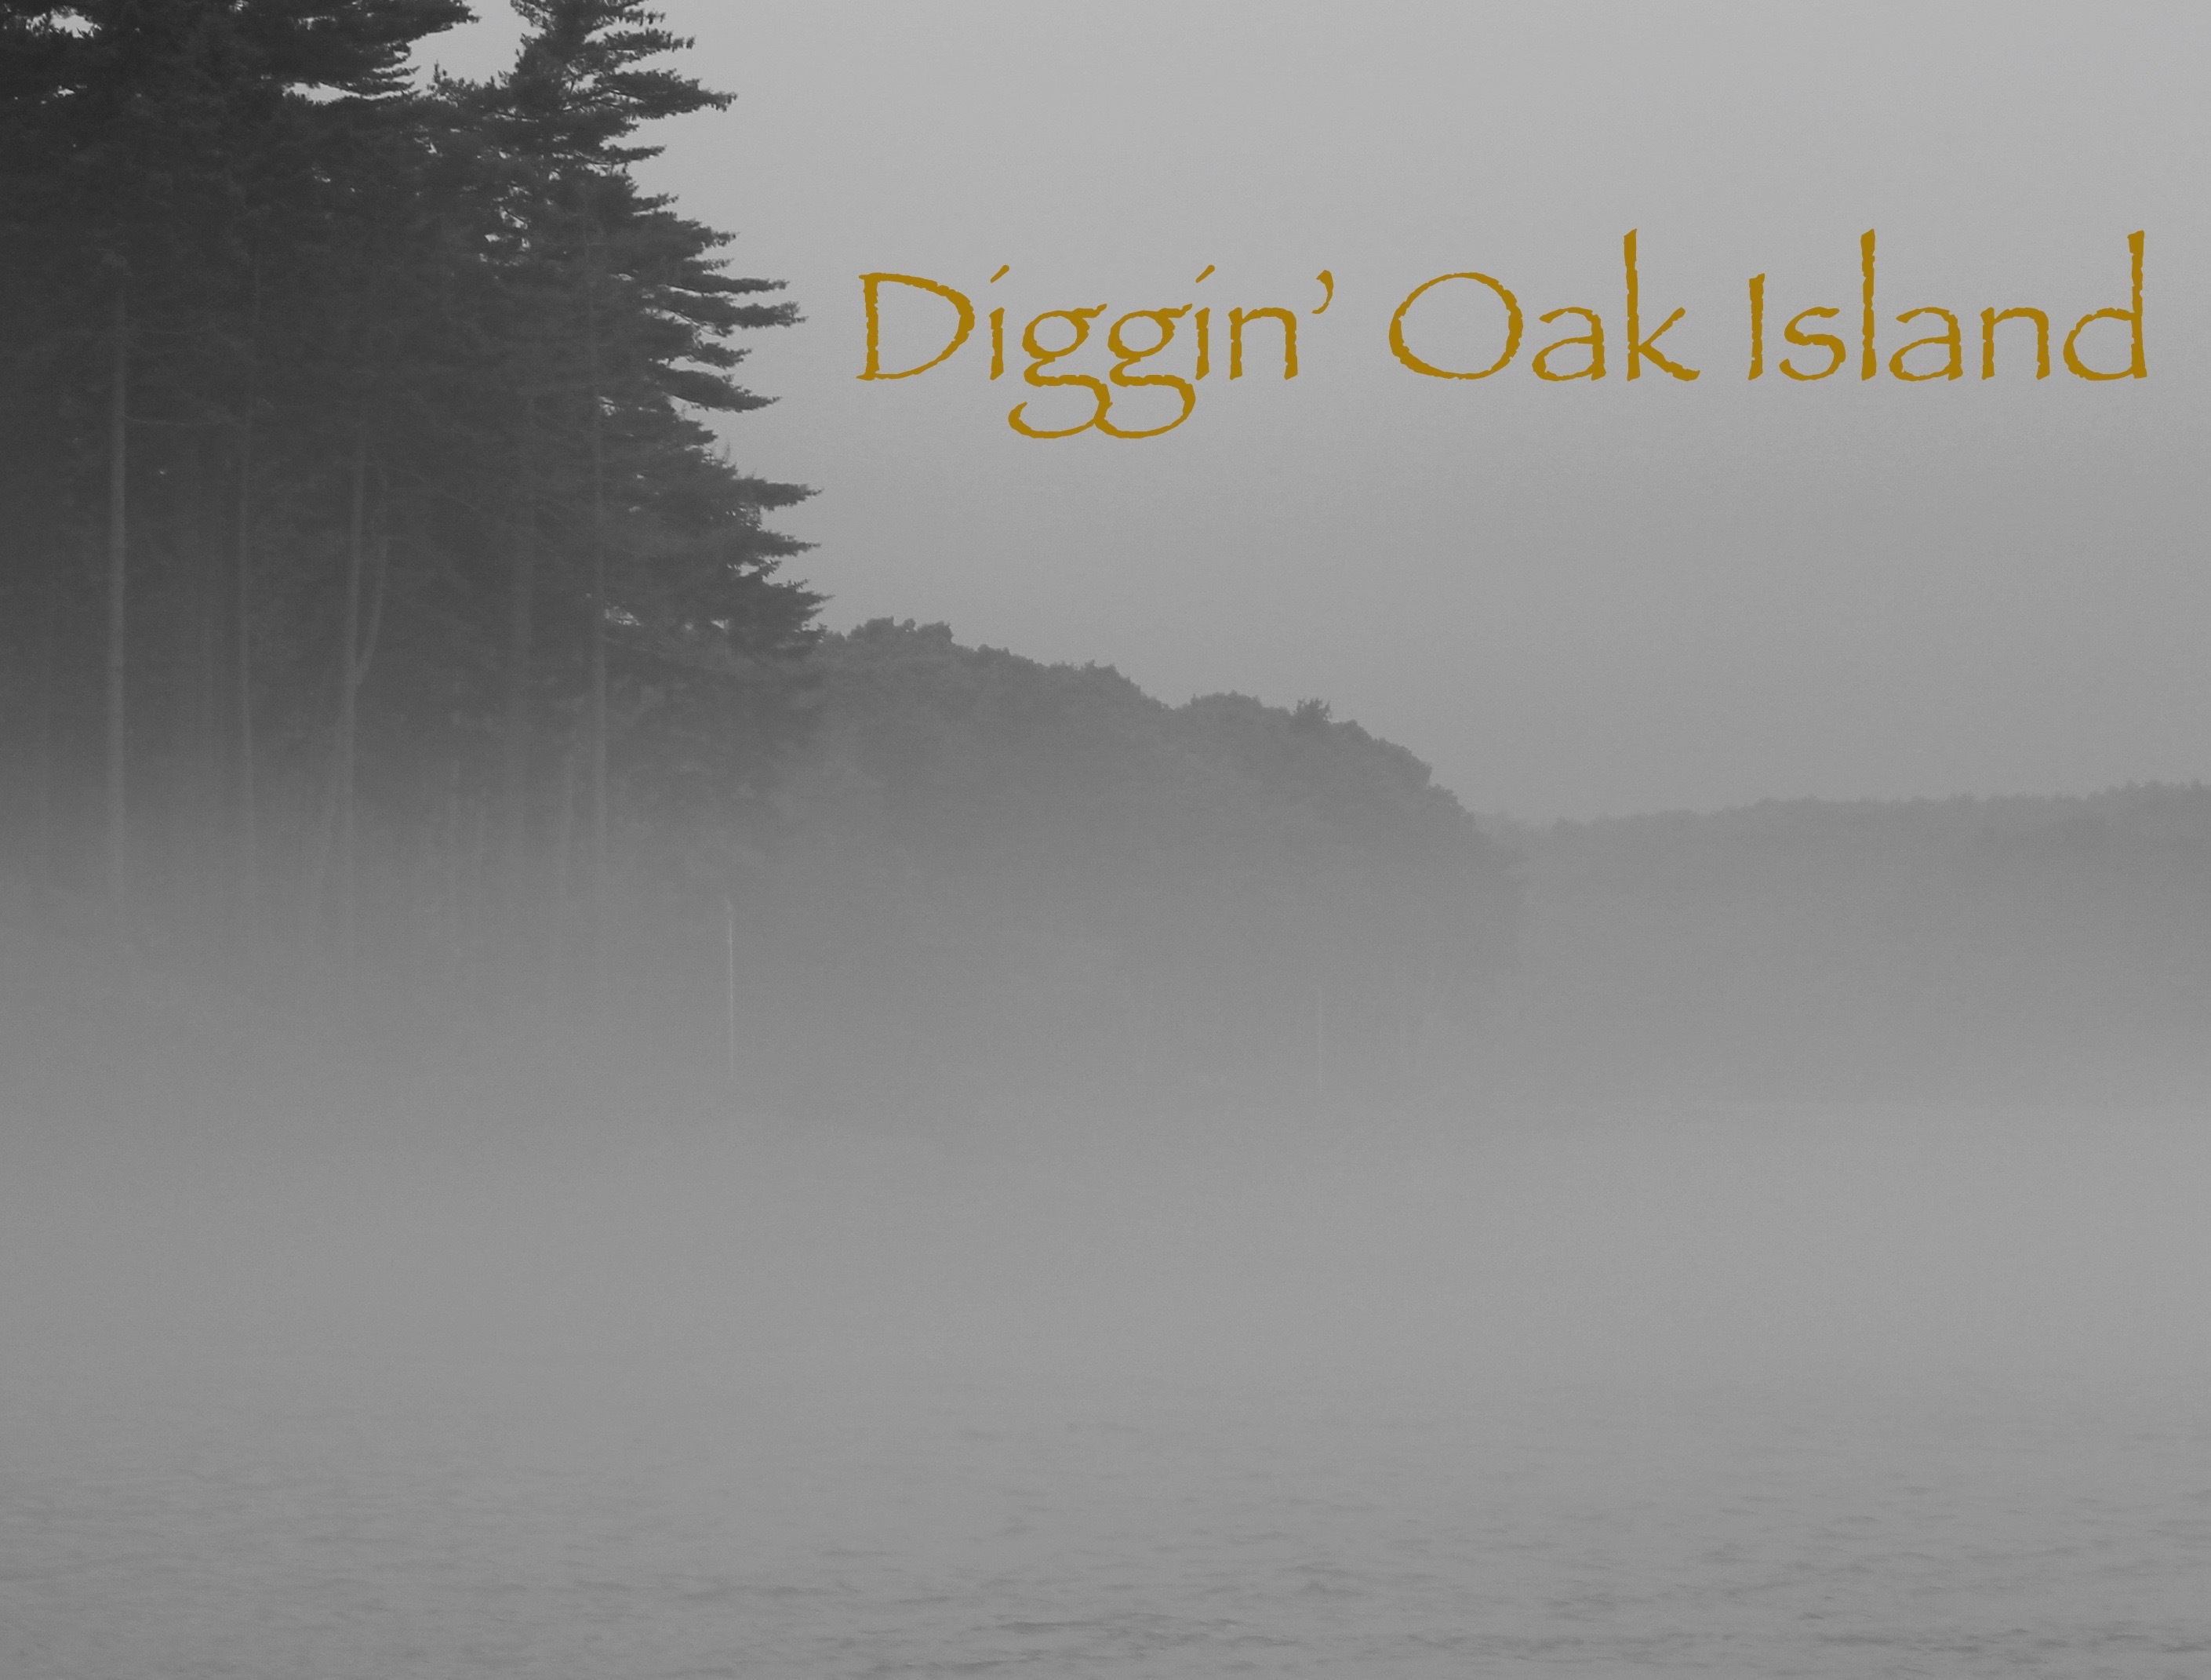 Diggin’ Oak Island